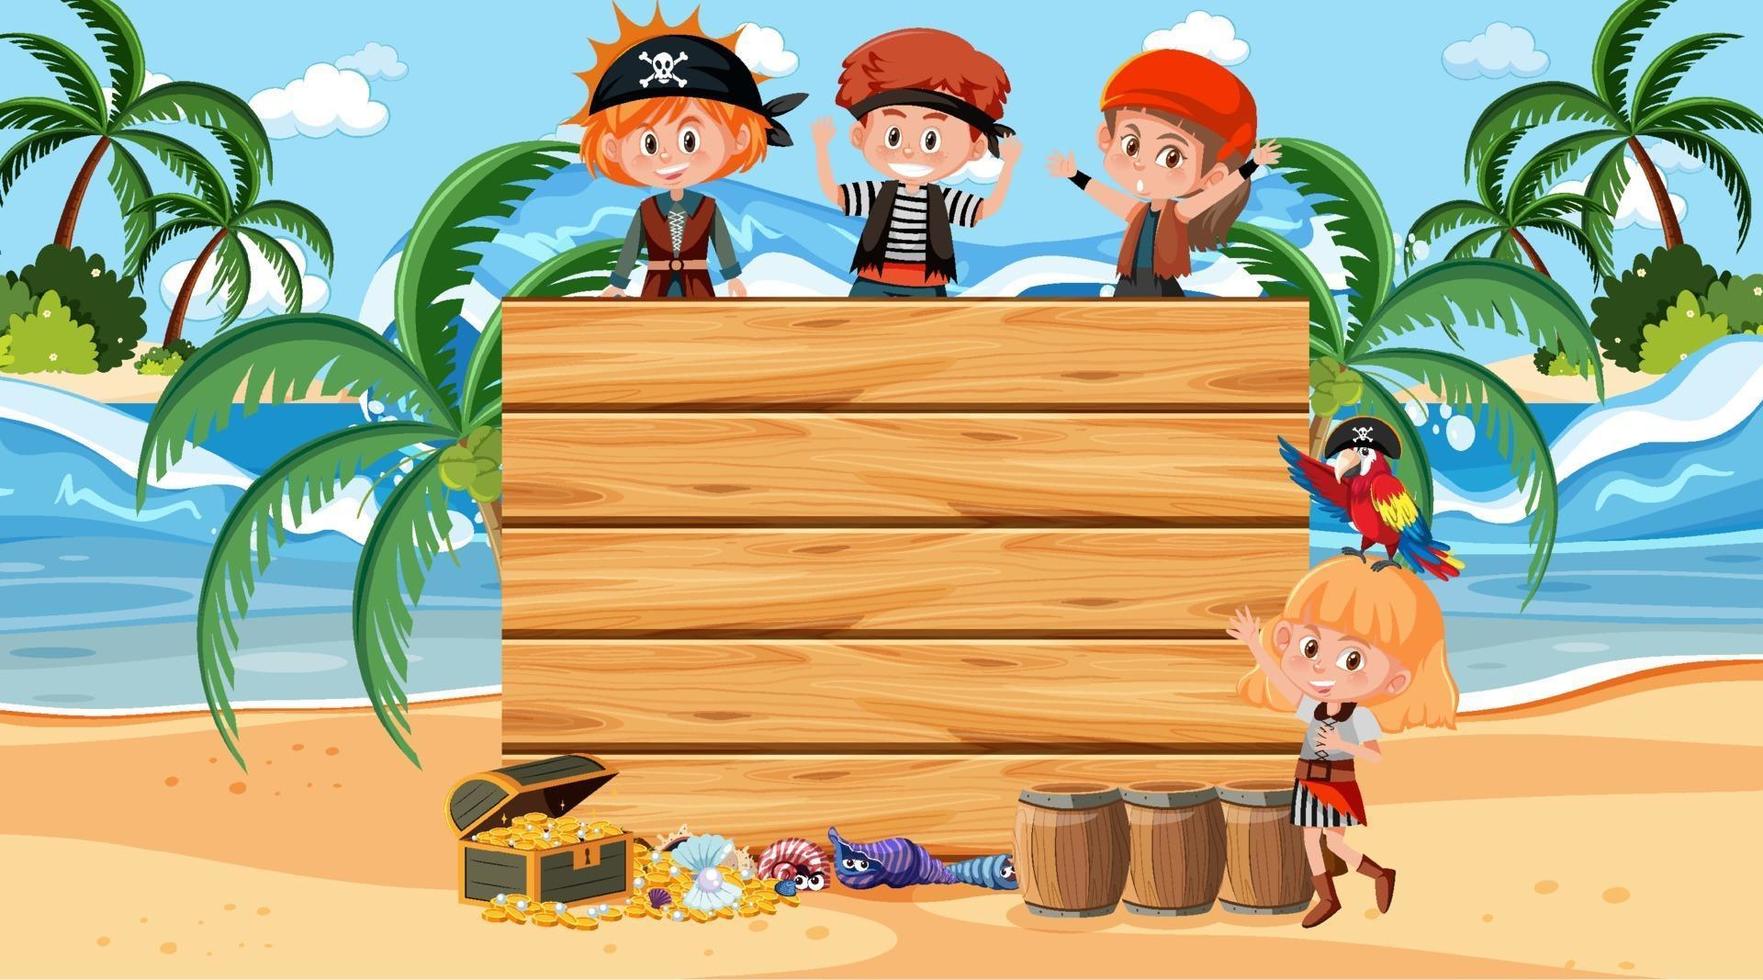 piratenkinderen op het strand overdag met een lege houten plank vector